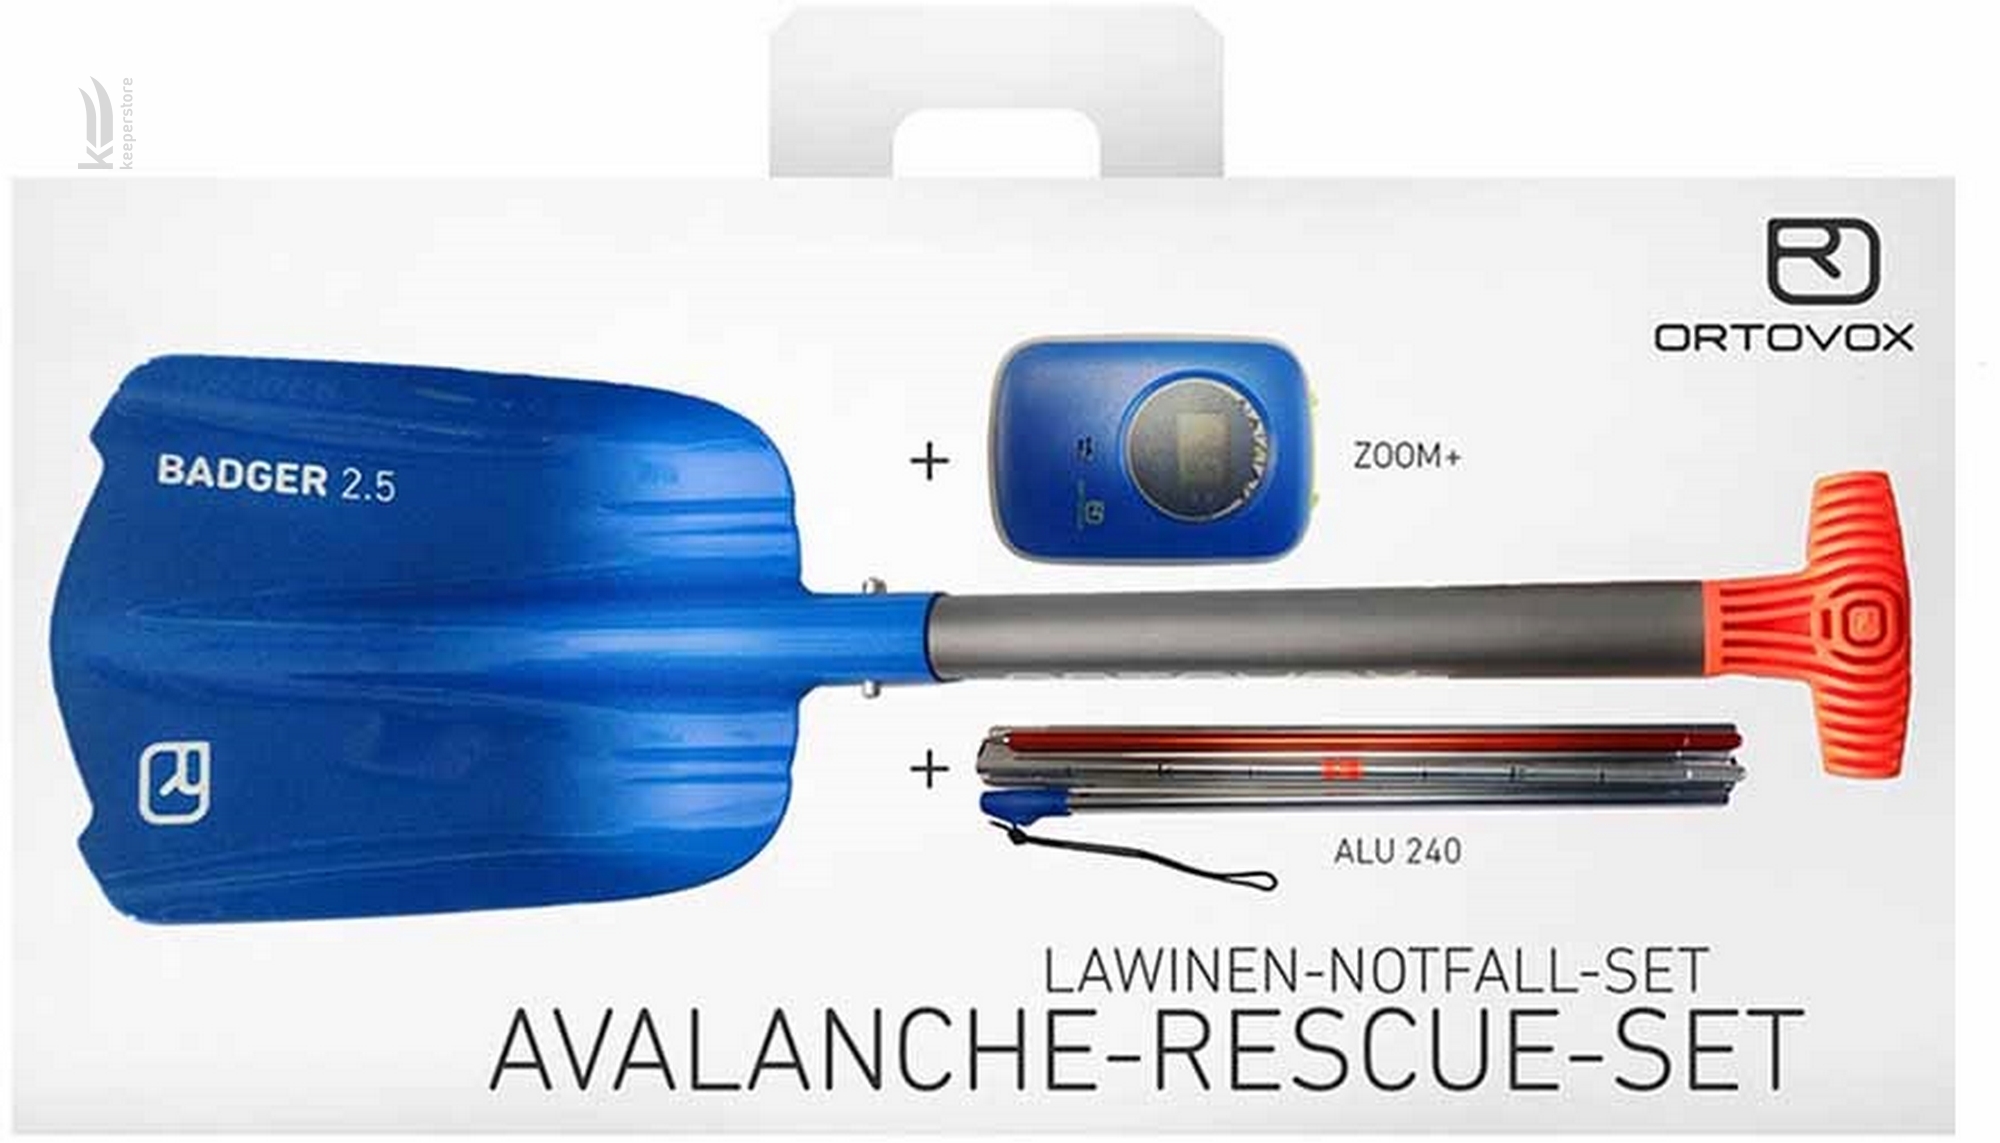 Ortovox Avalanche Rescue Set Zoom+ 2018